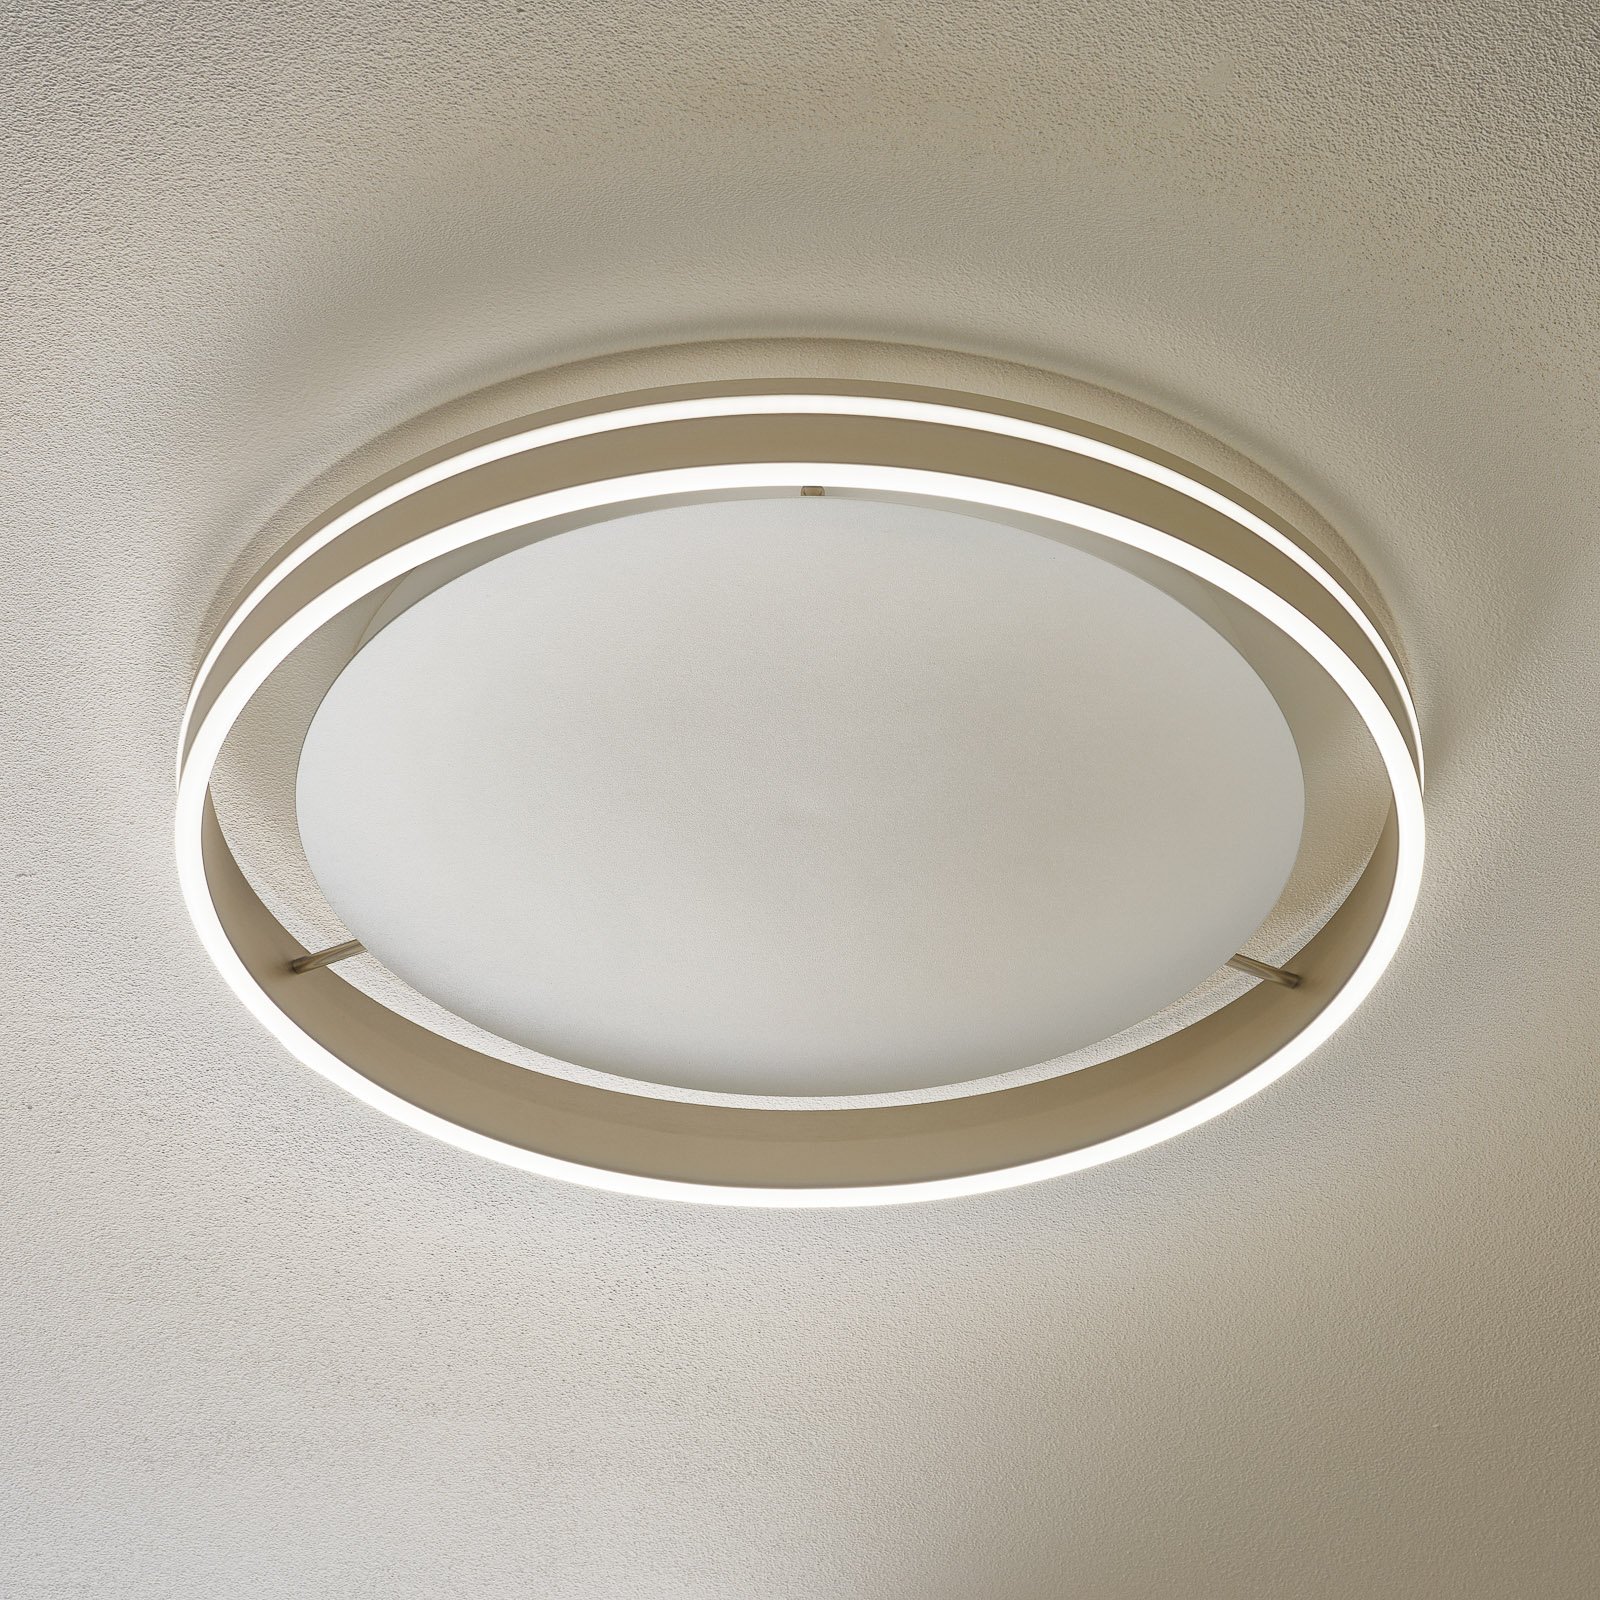 Paul Neuhaus Q-VITO LED ceiling lamp 59 cm steel